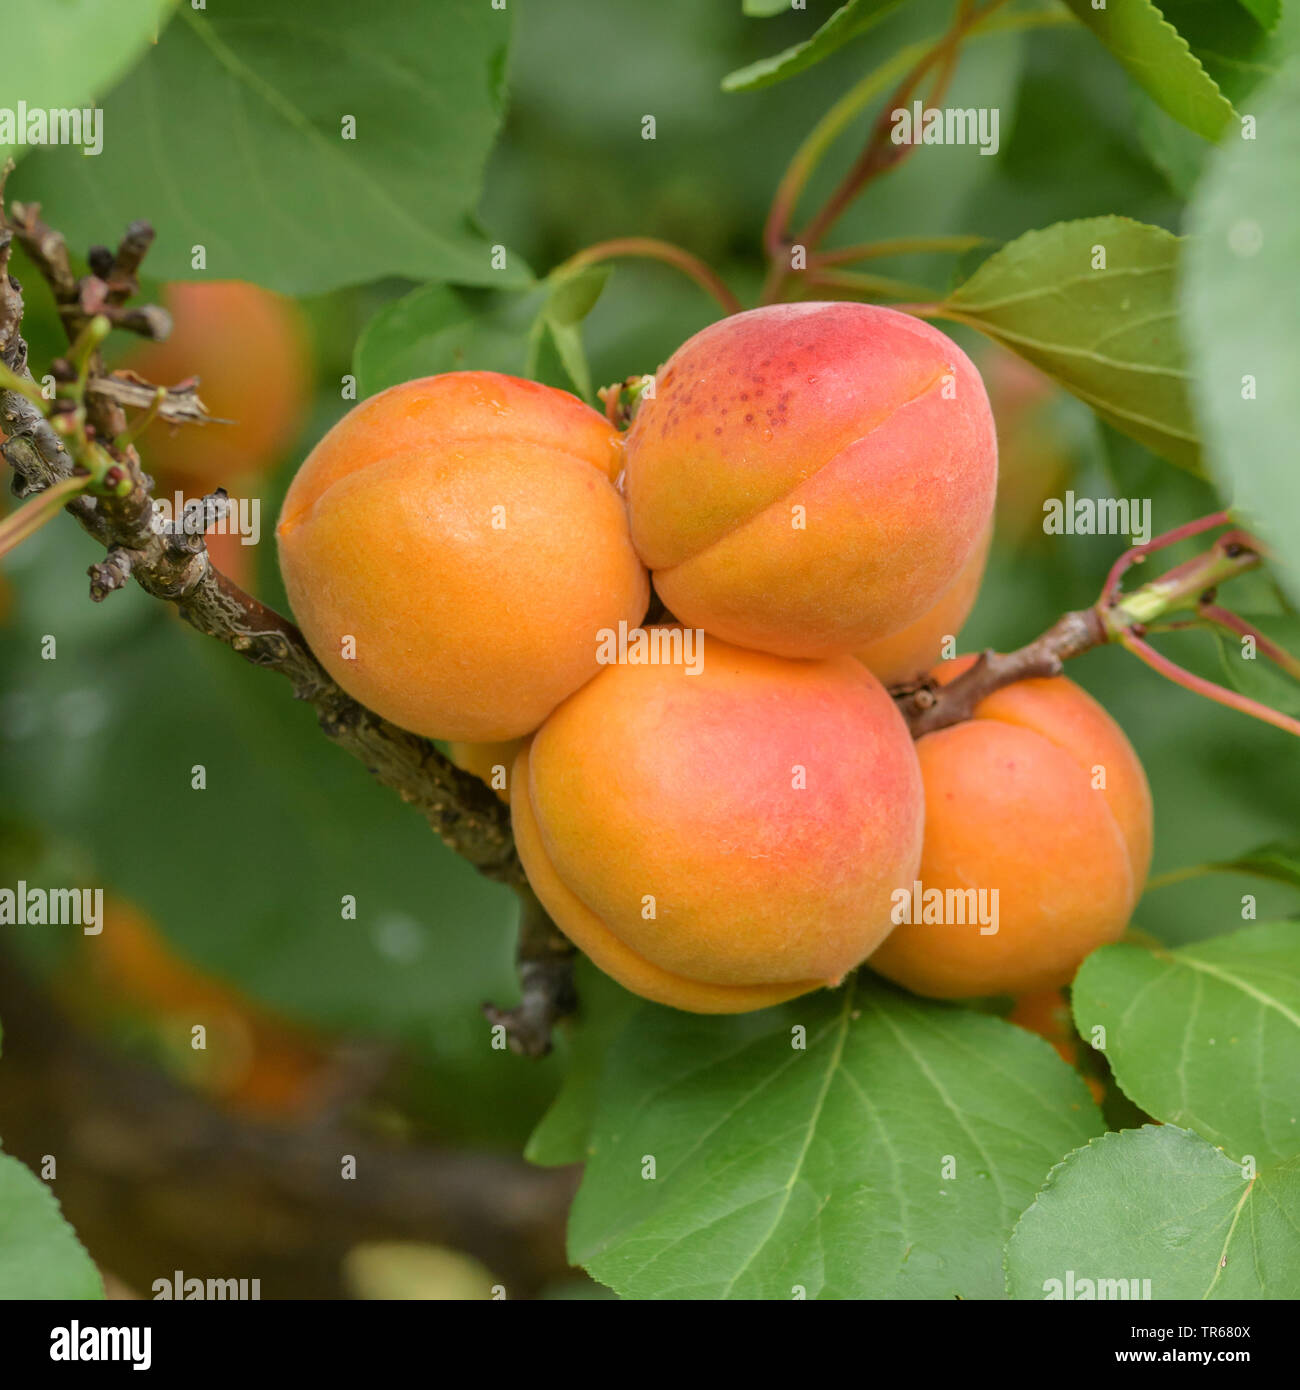 apricot tree (Prunus armeniaca 'Tardicot', Prunus armeniaca Tardicot), apricots on a tree, cultivar Tardicot Stock Photo